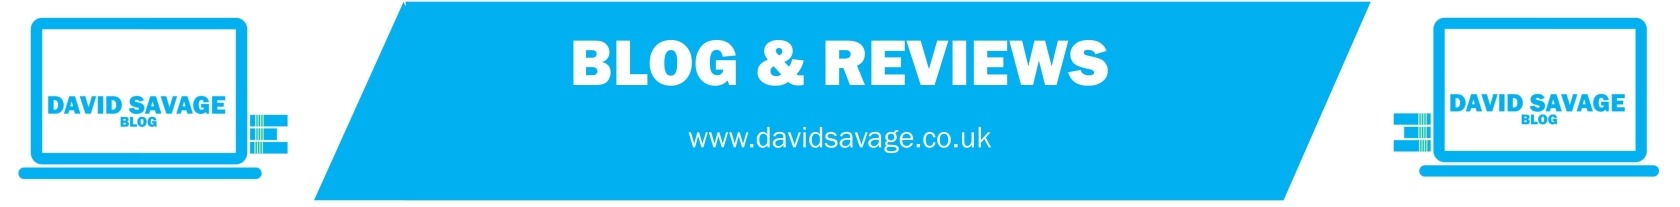 davidsavage.co.uk